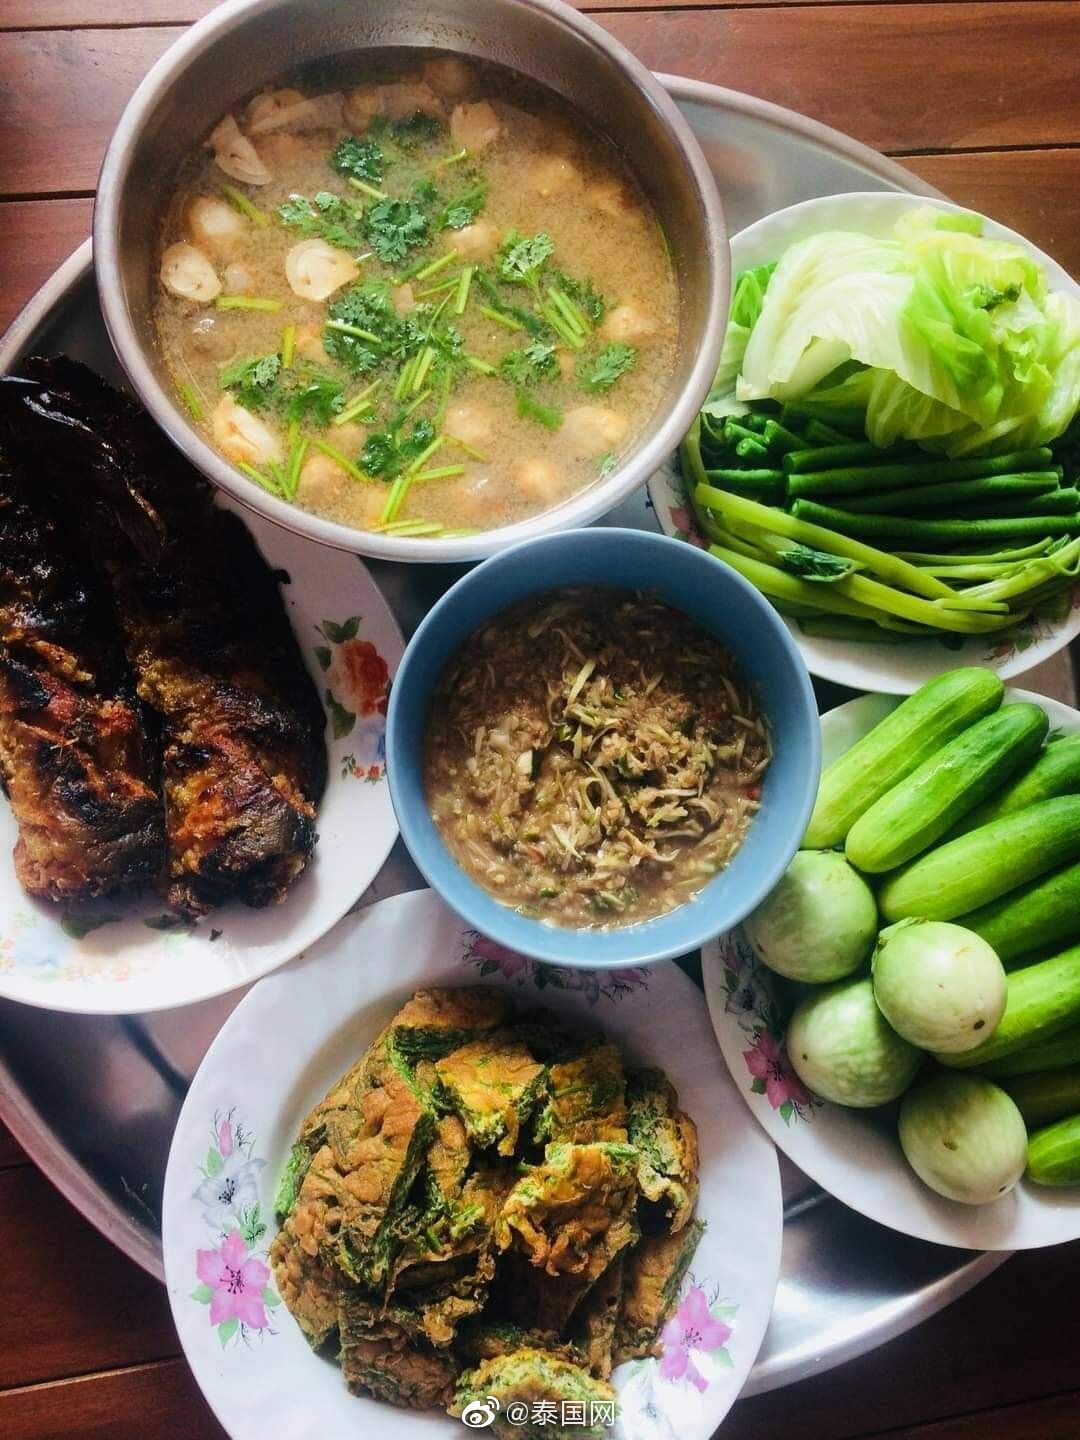 瓦城泰國料理 永和店 台北 外送 | 菜單 | Uber Eats